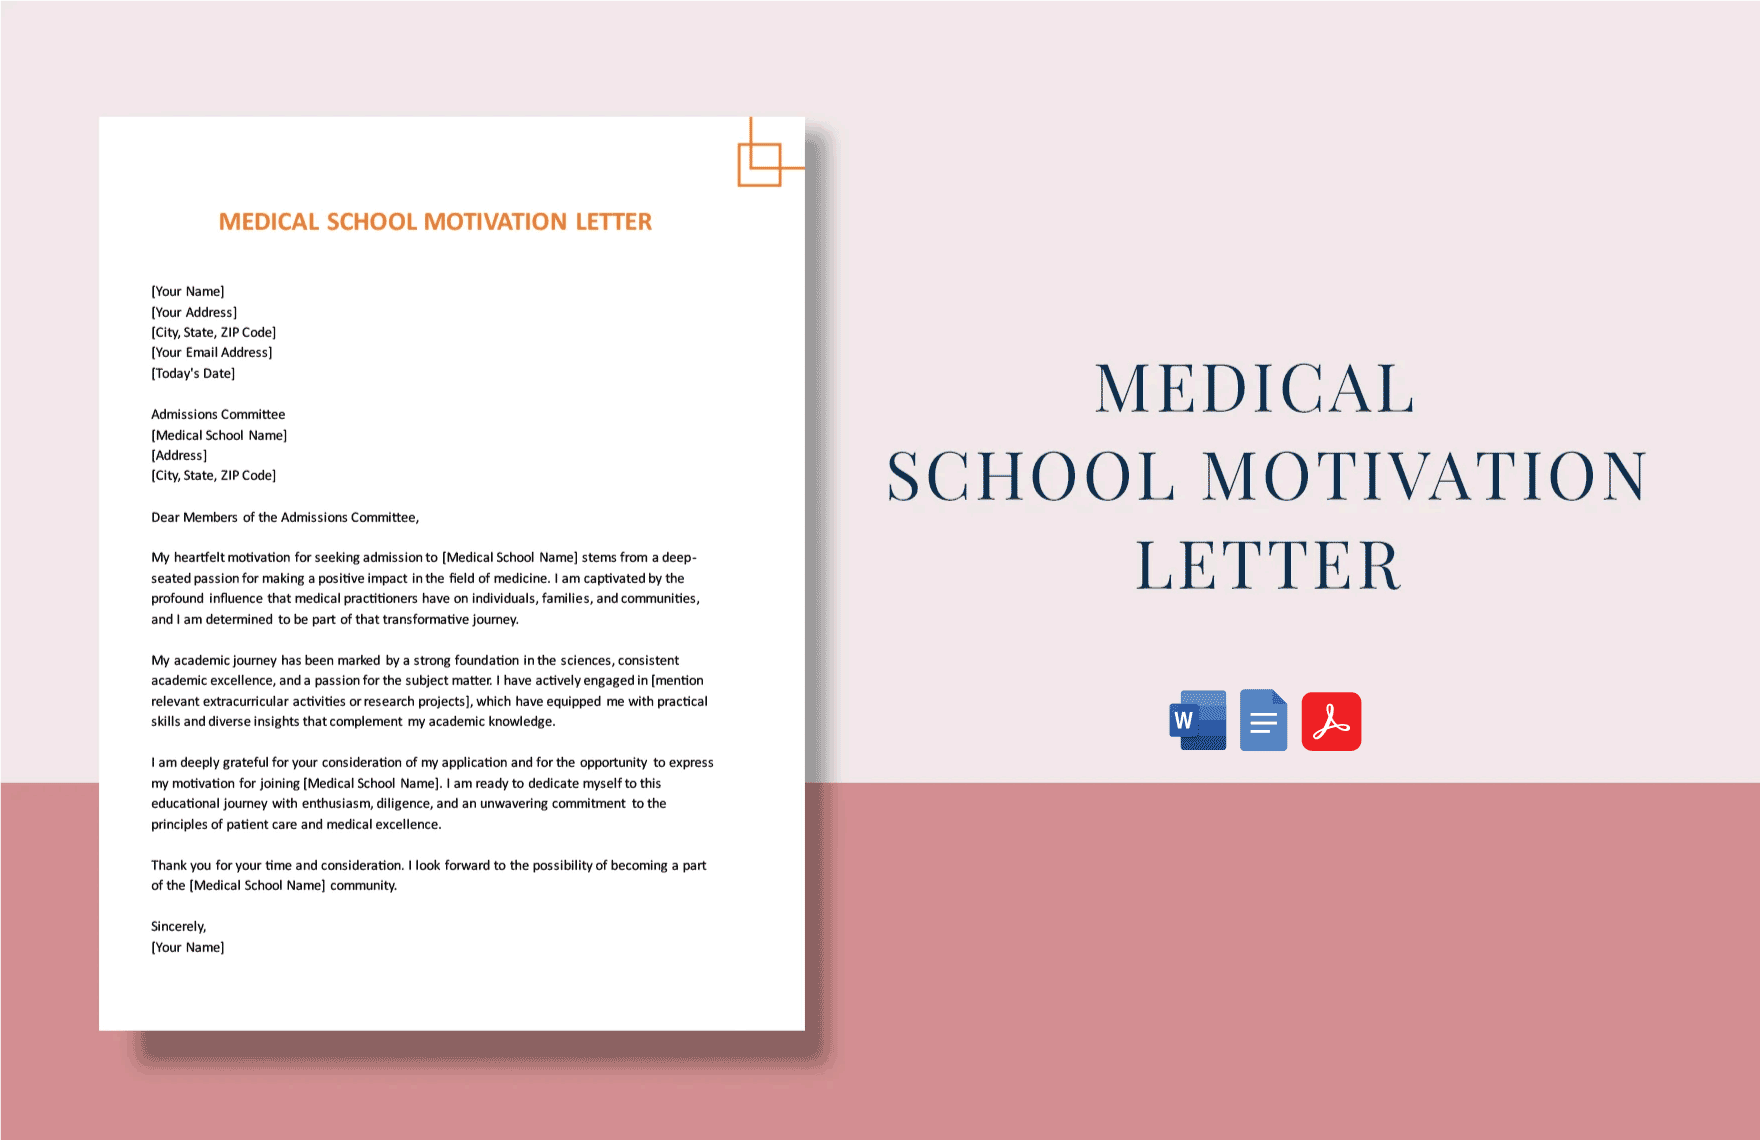 Medical School Motivation Letter in Word, Google Docs, PDF